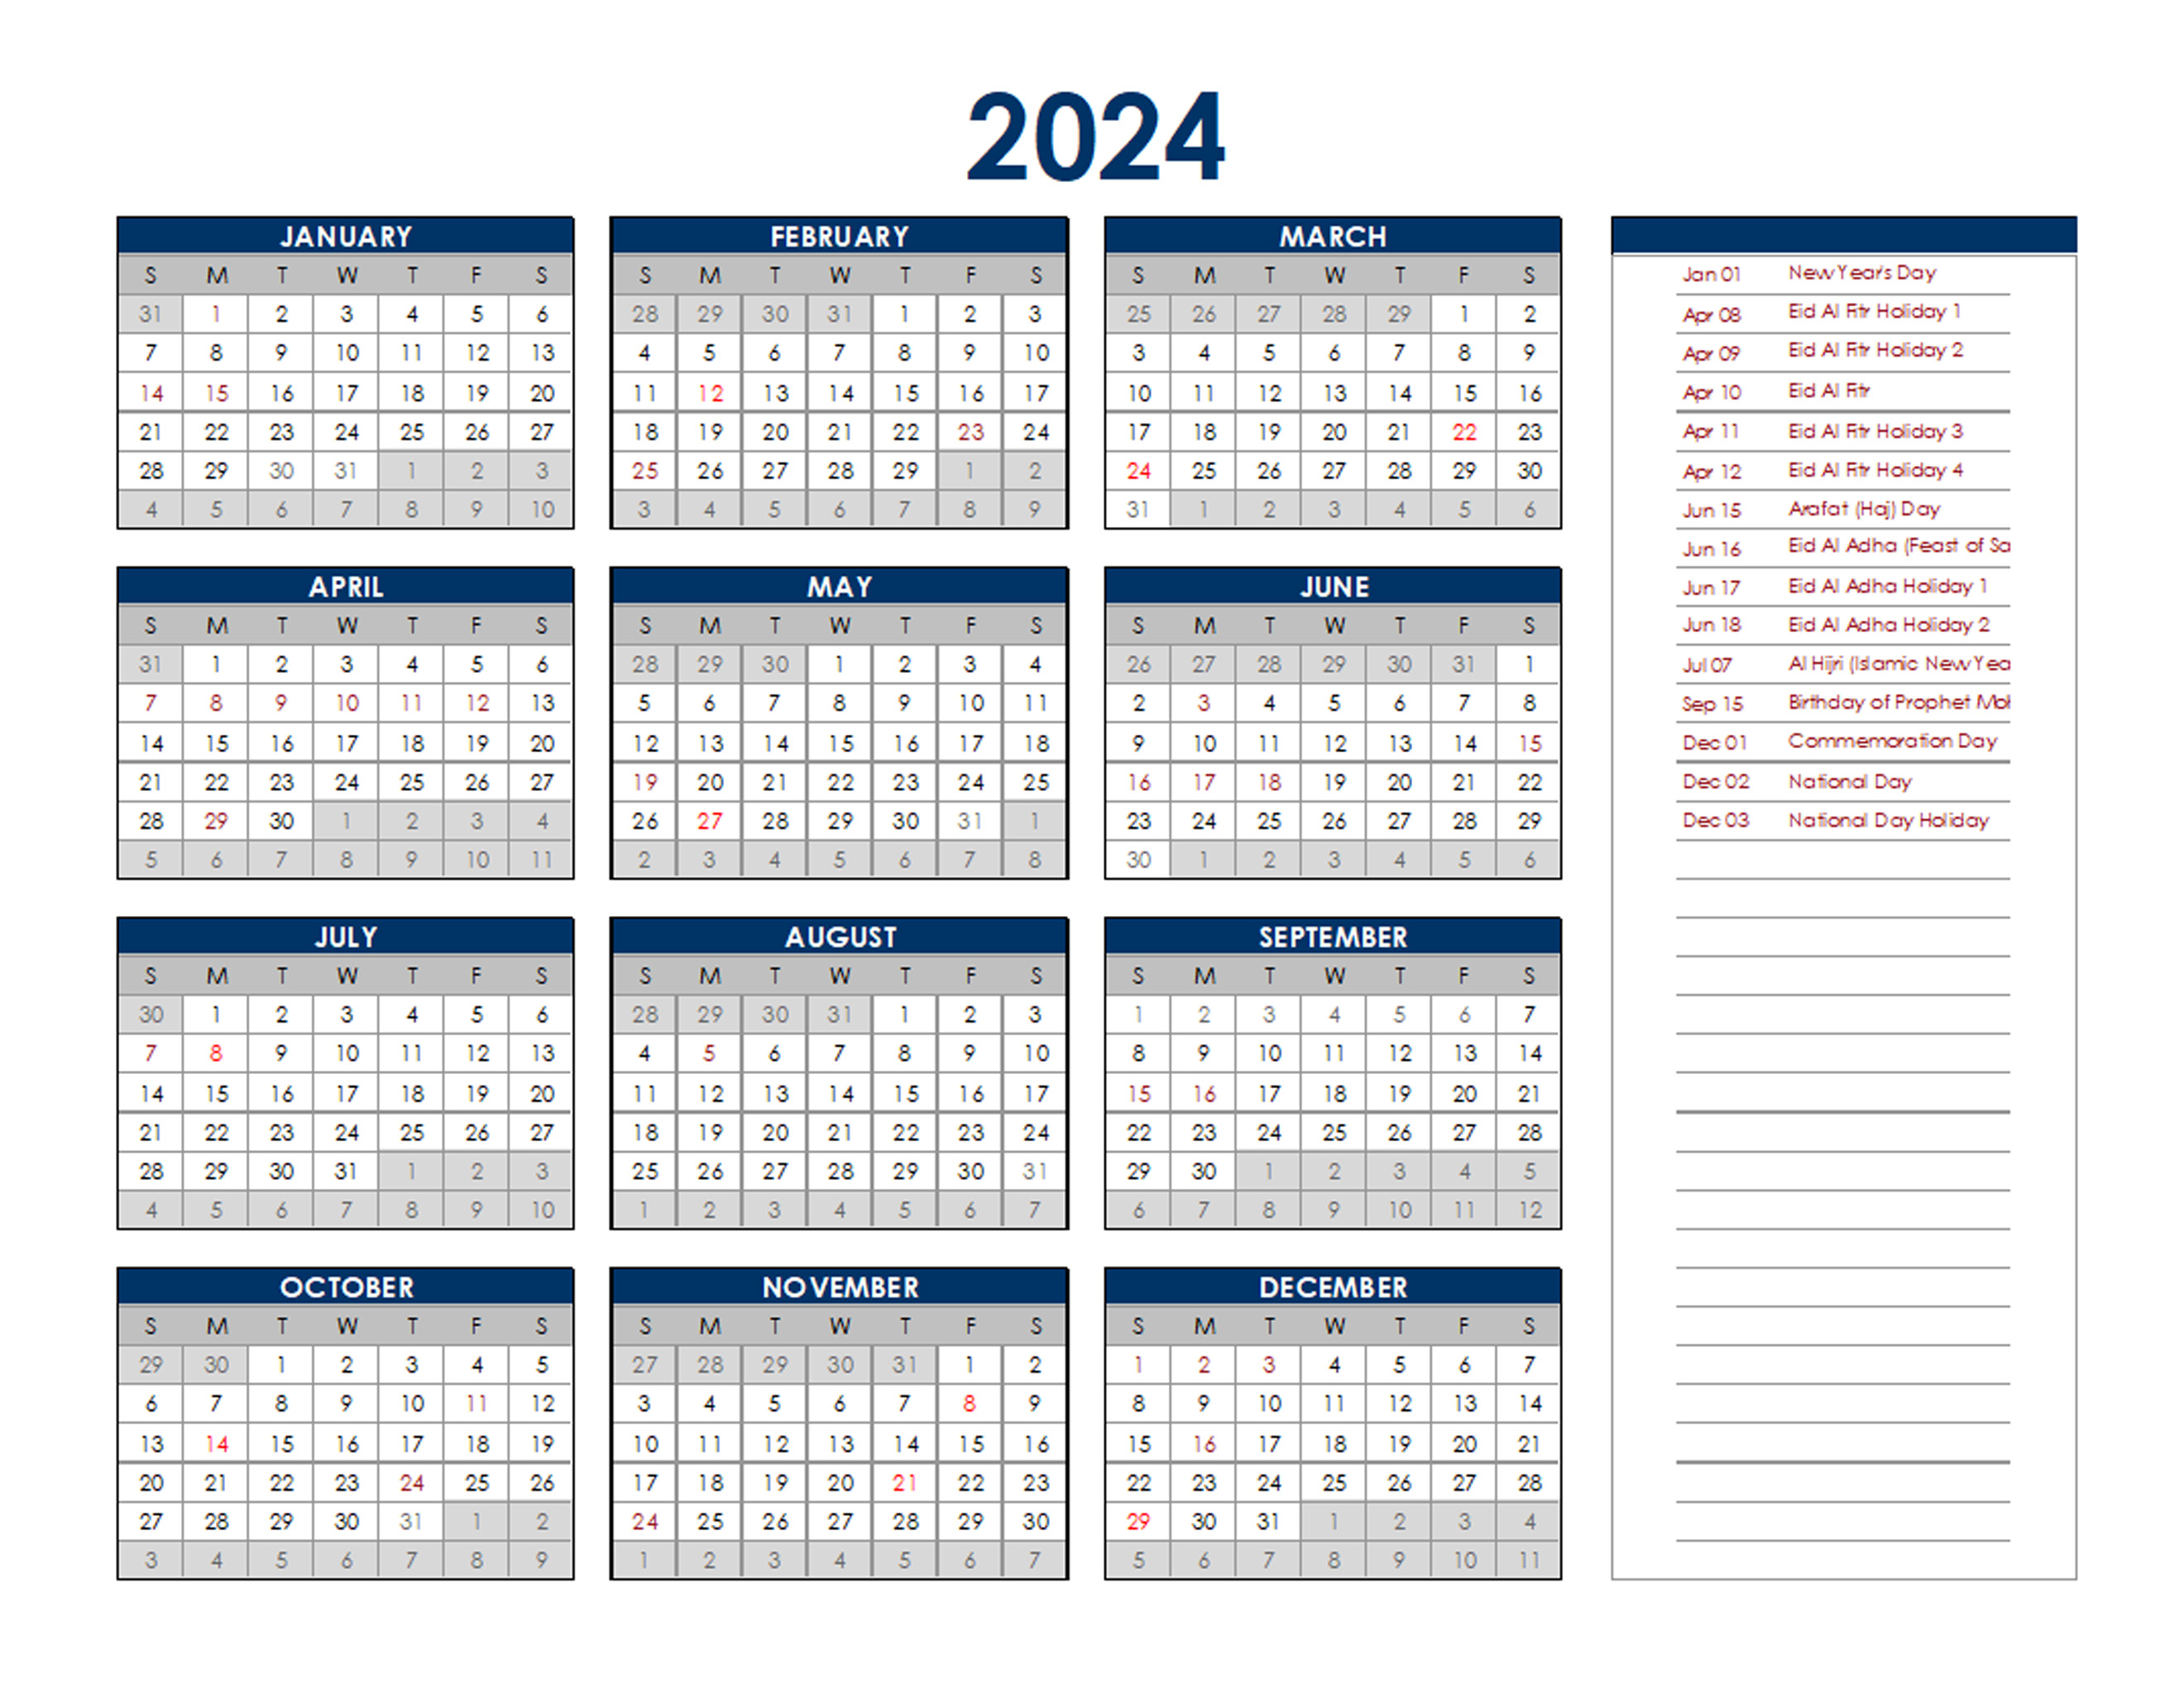 2024 Uae Annual Calendar Holidays 02 